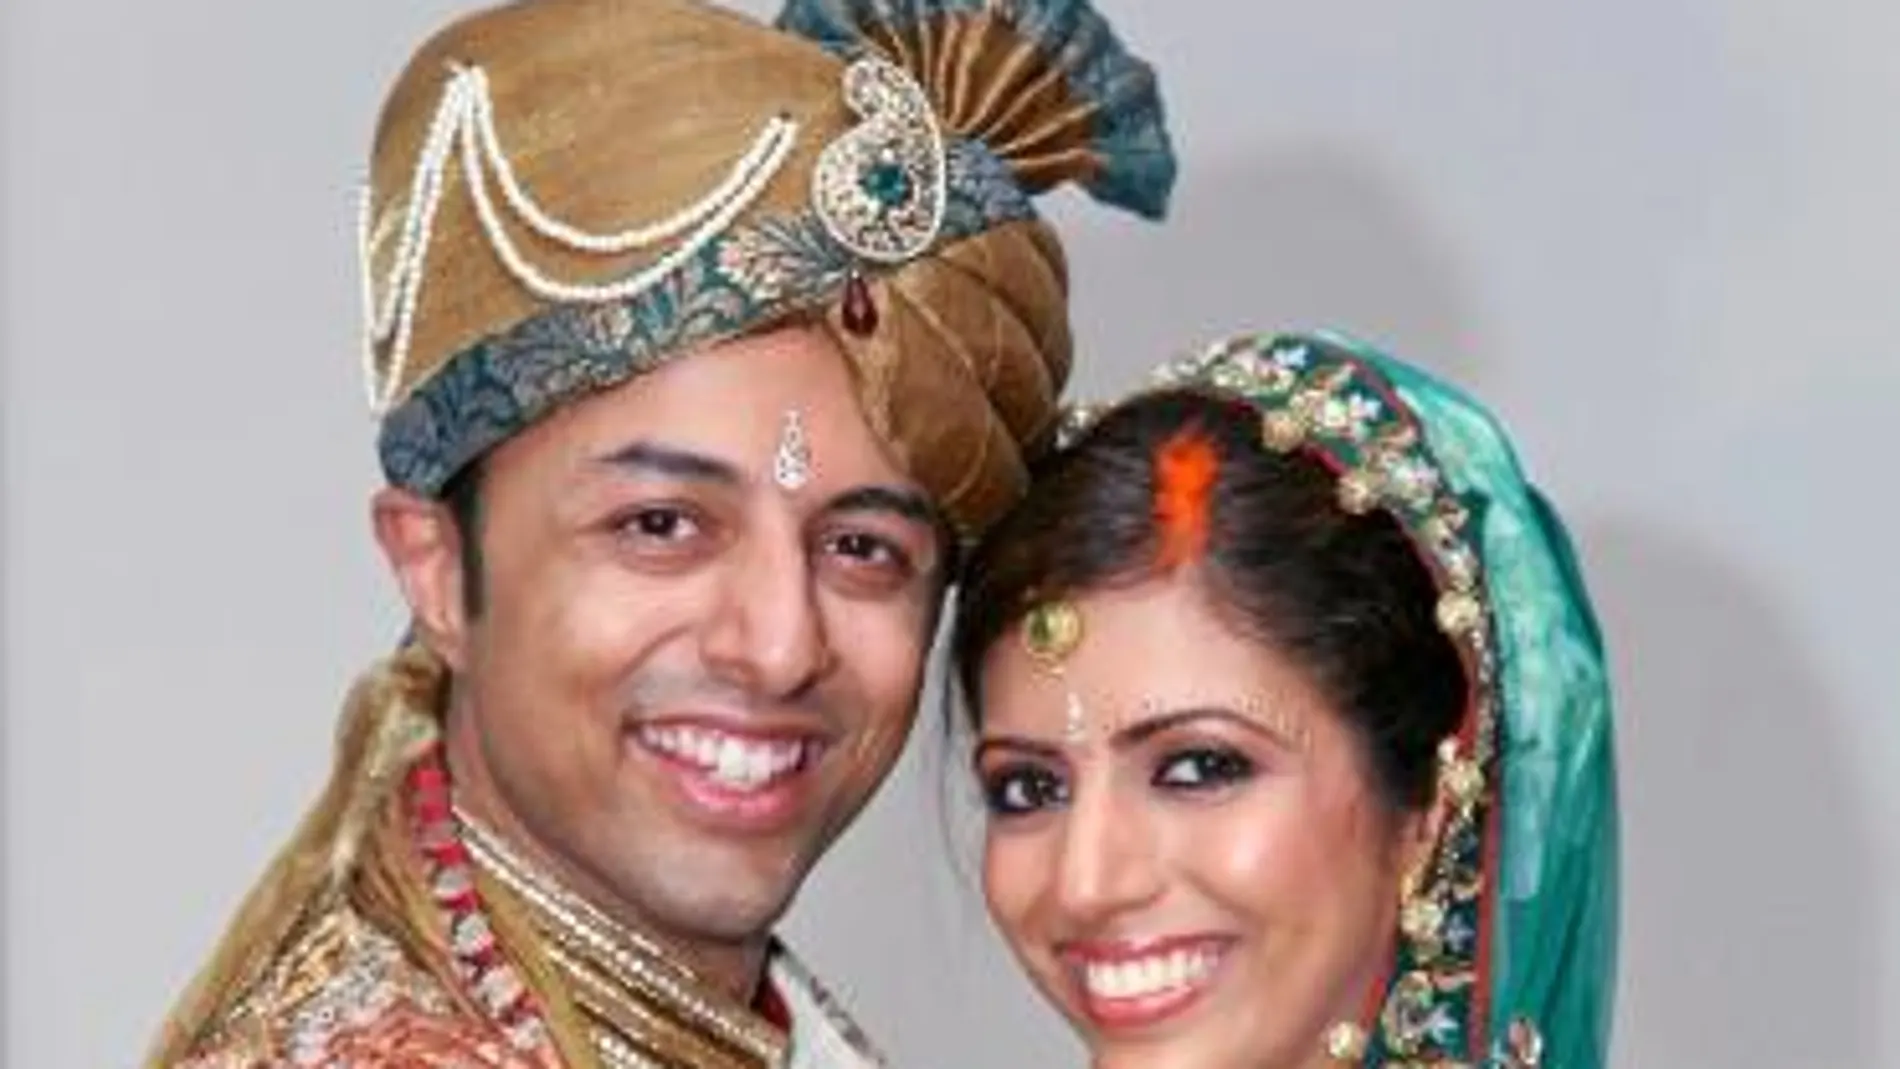 El millonario Shrien Dewani y su difunta esposa, Anni, en una imagen de su boda, poco antes de que ella fuera asesinada